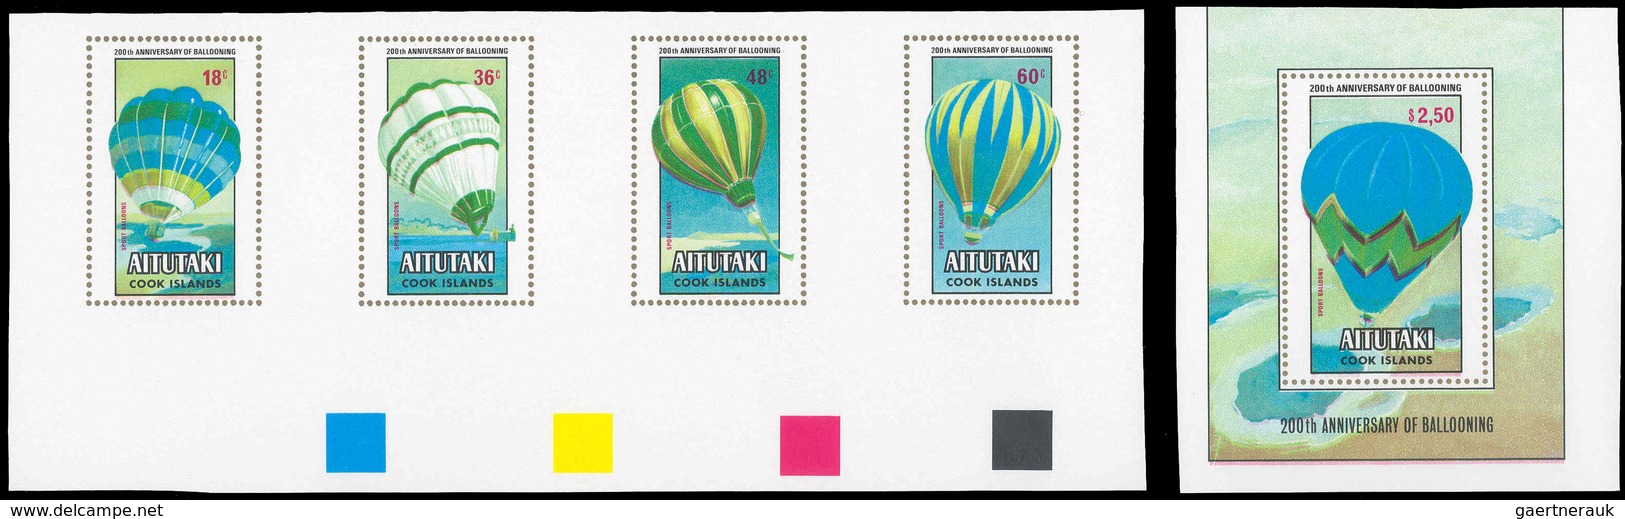 10170 Thematik: Ballon-Luftfahrt / Balloon-aviation: 1983, Aitutaki: 200th ANNIVERSARY OF BALLOONING, Hot- - Arbres